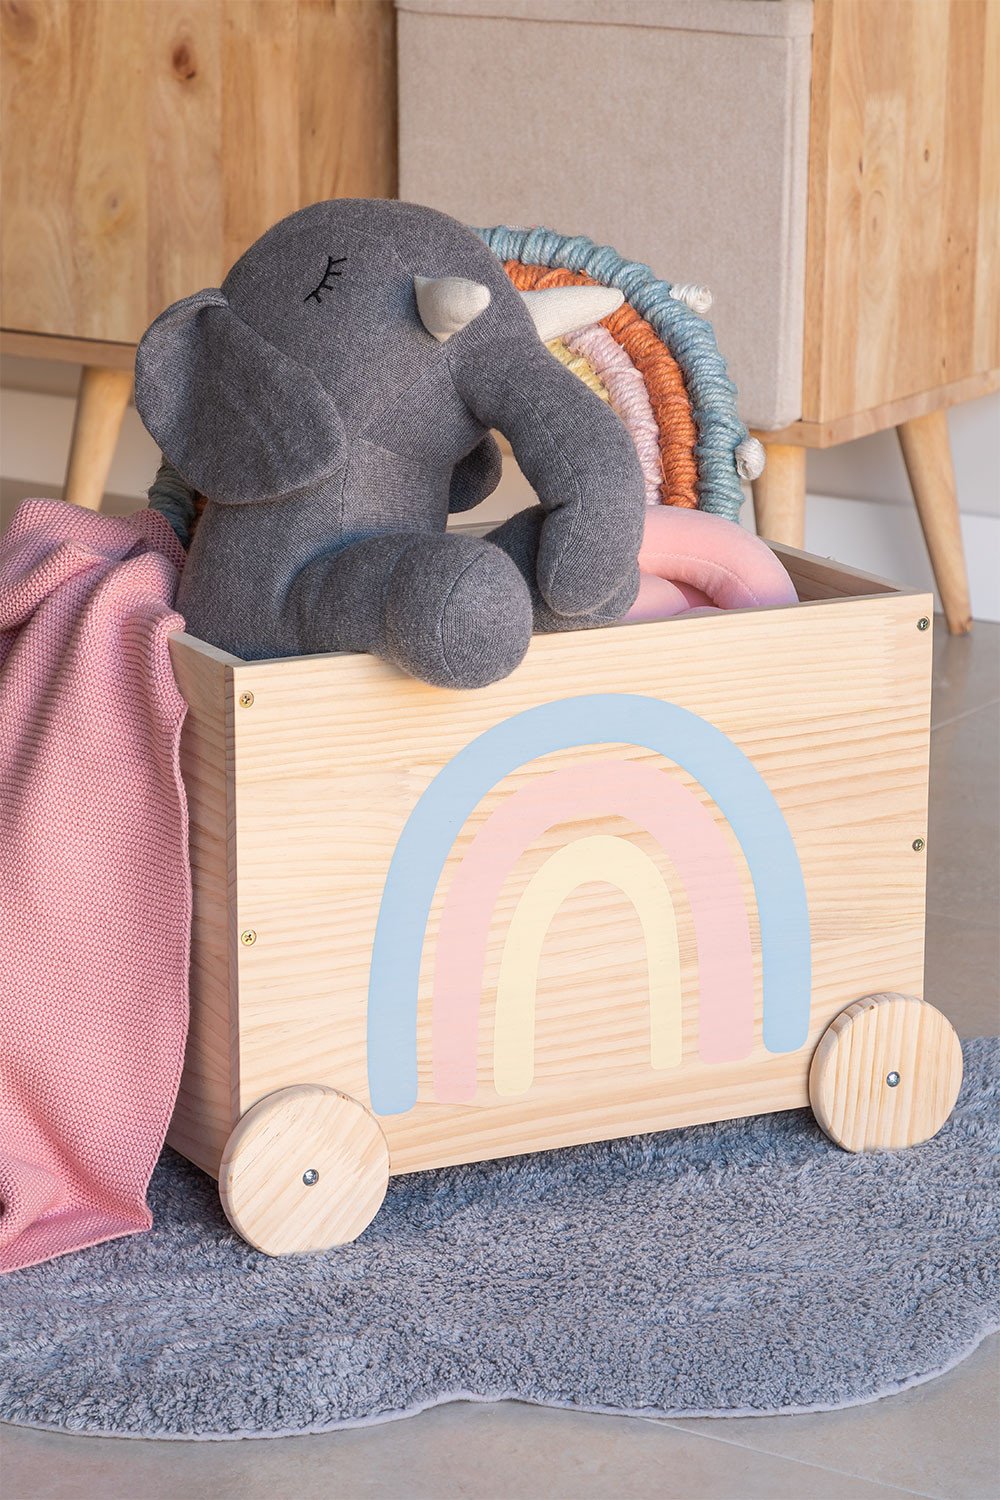 ChengBeautiful Chariot De Rangement pour Jouets Enfants Toy